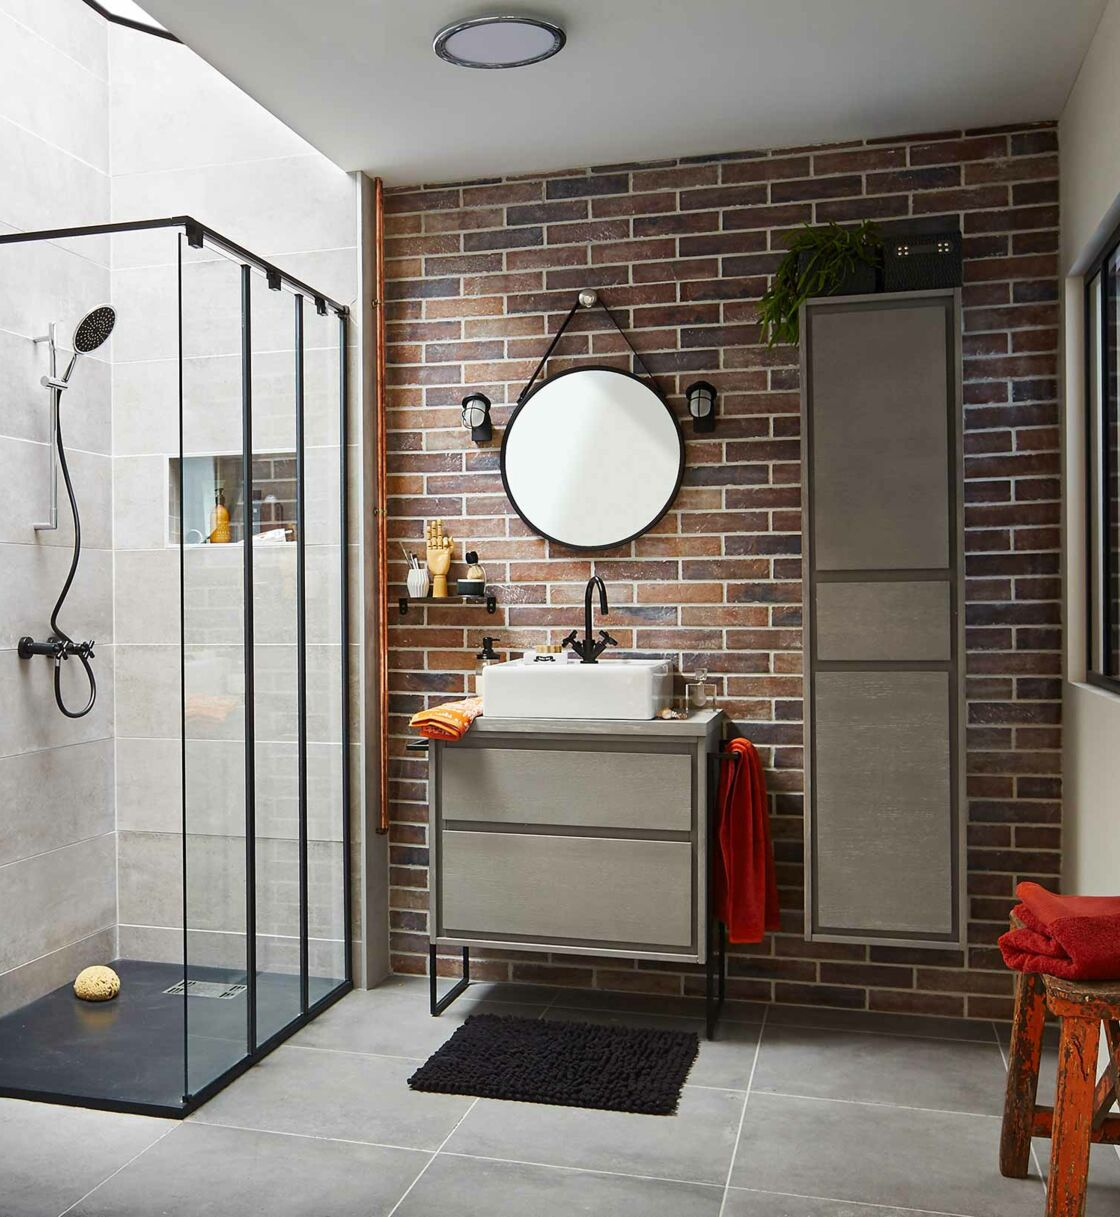 Comment Aménager Une Douche Dans Une Petite Salle De Bains ? : Femme ... pour Faire Une Salle De Bain Moderne